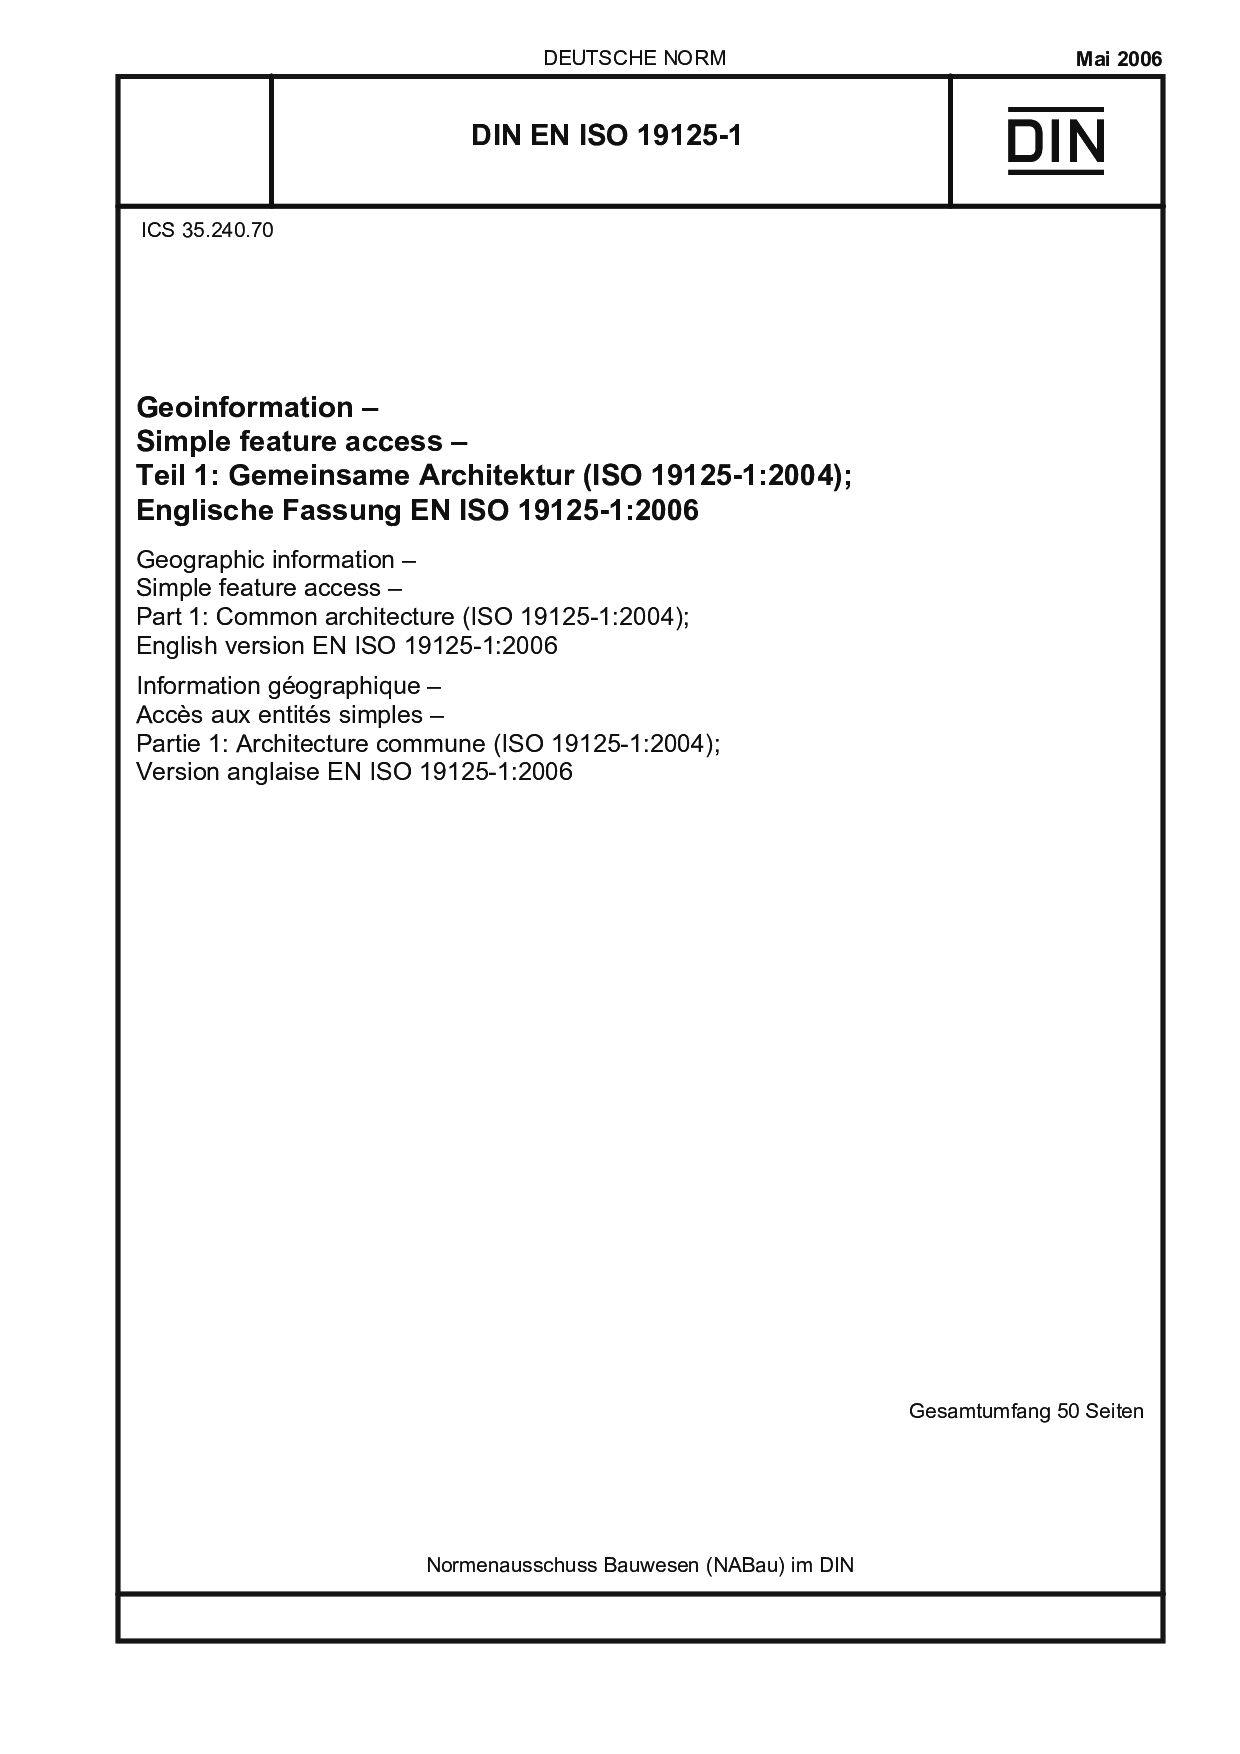 DIN EN ISO 19125-1:2006